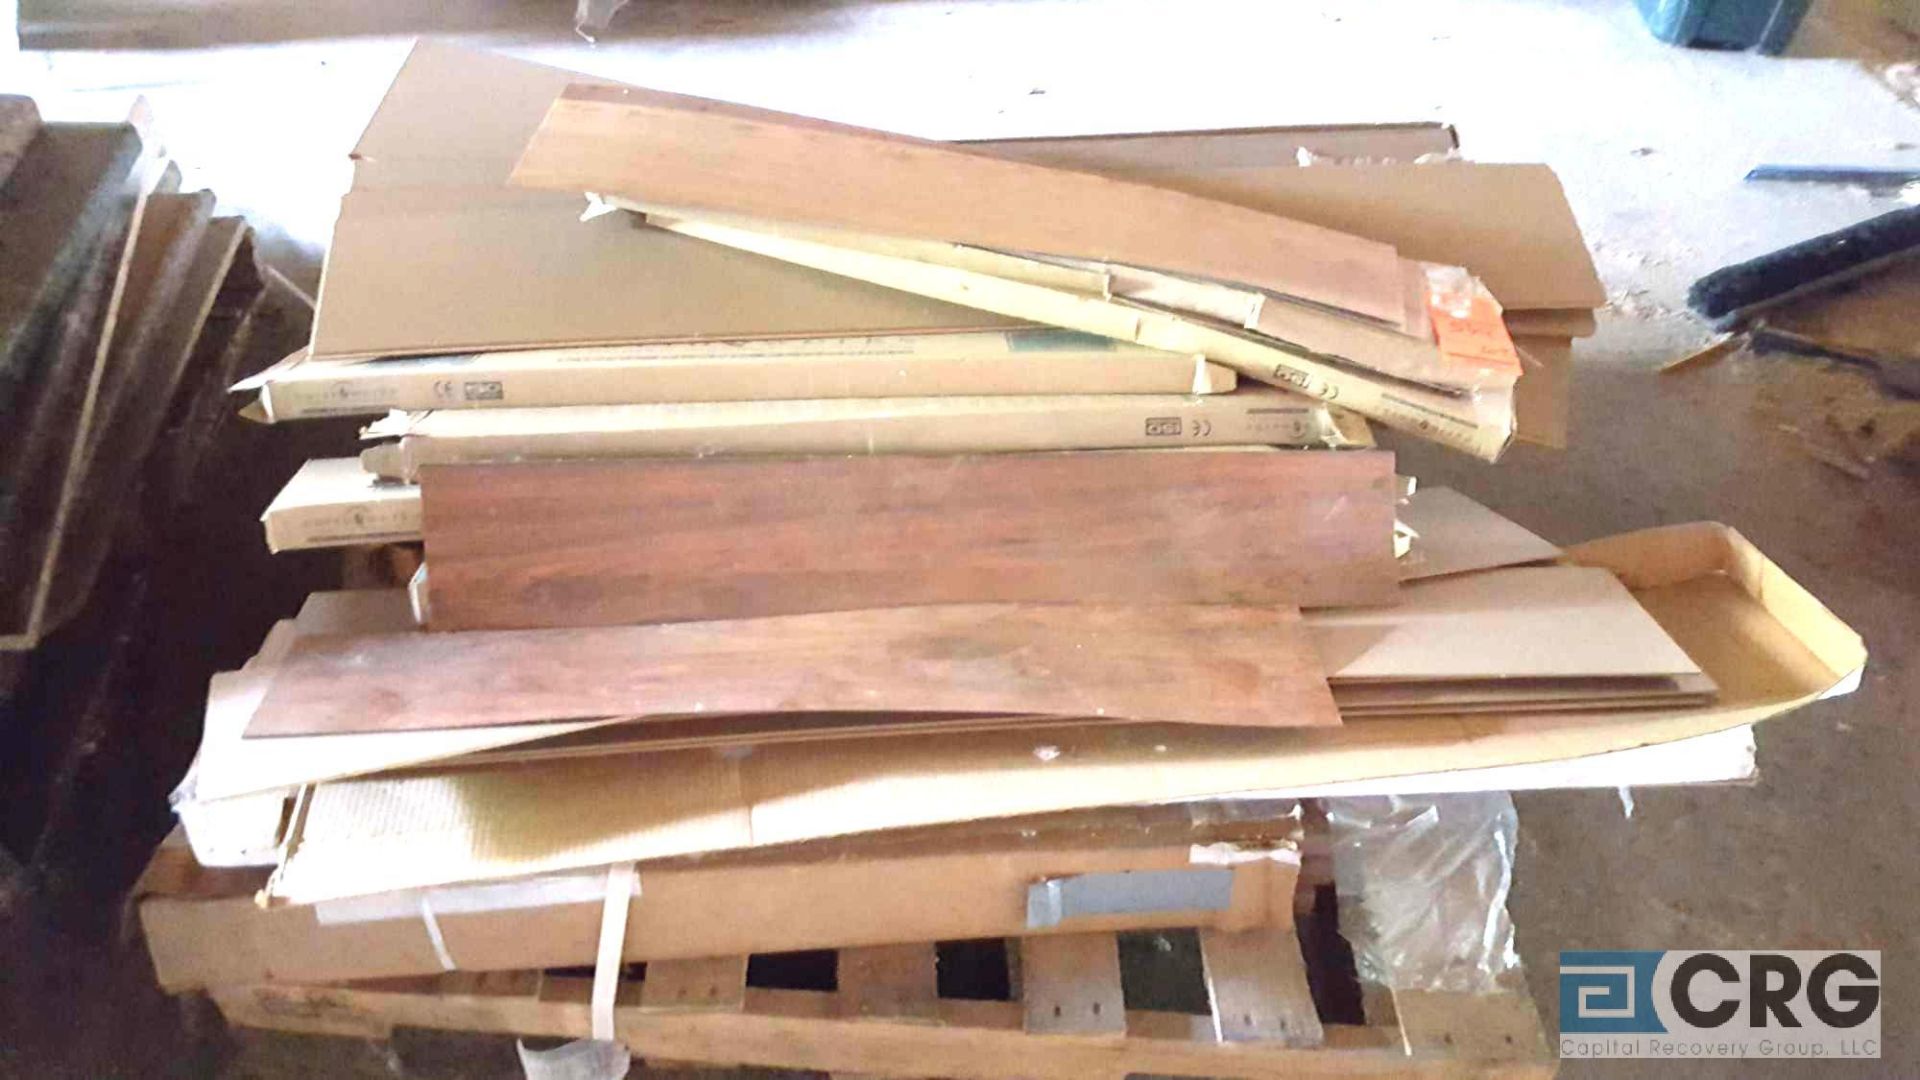 Lot of assorted linoleum trim and vinyl plank flooring, etc. - Image 2 of 4